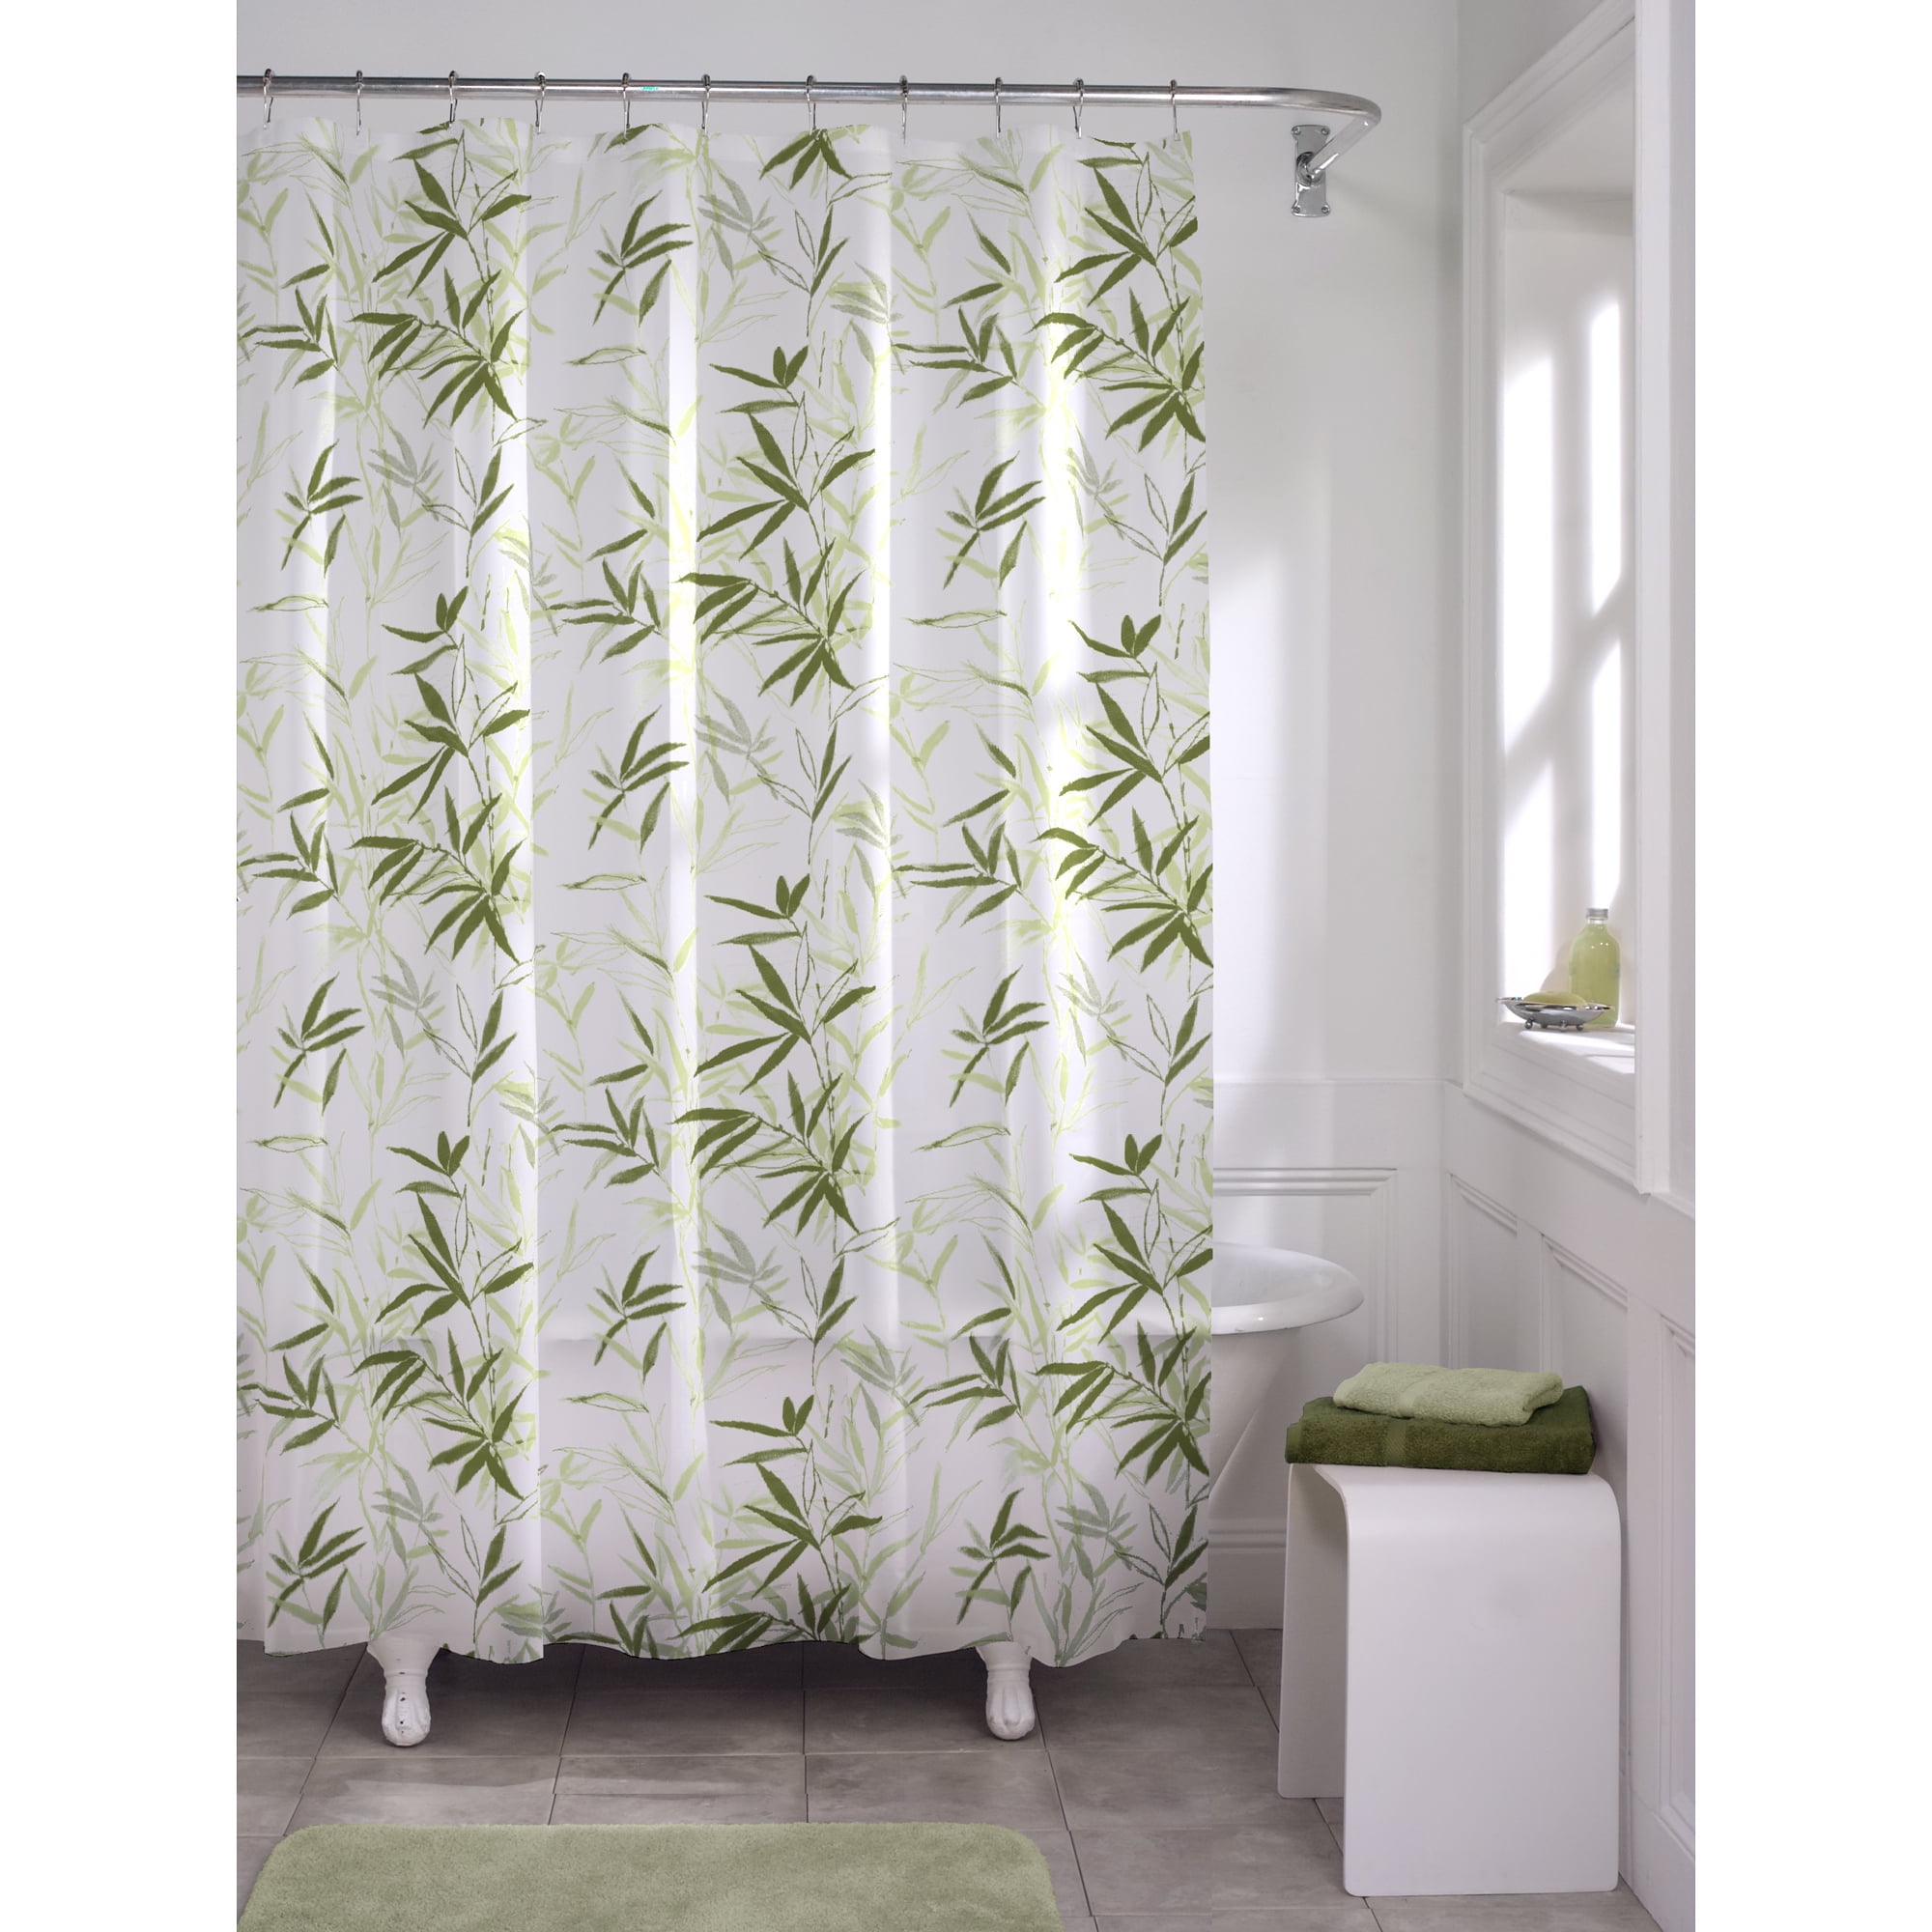 Bathroom Shower Curtain in Soft Leaves Pattern Bathroom Waterproof Curtain WE 